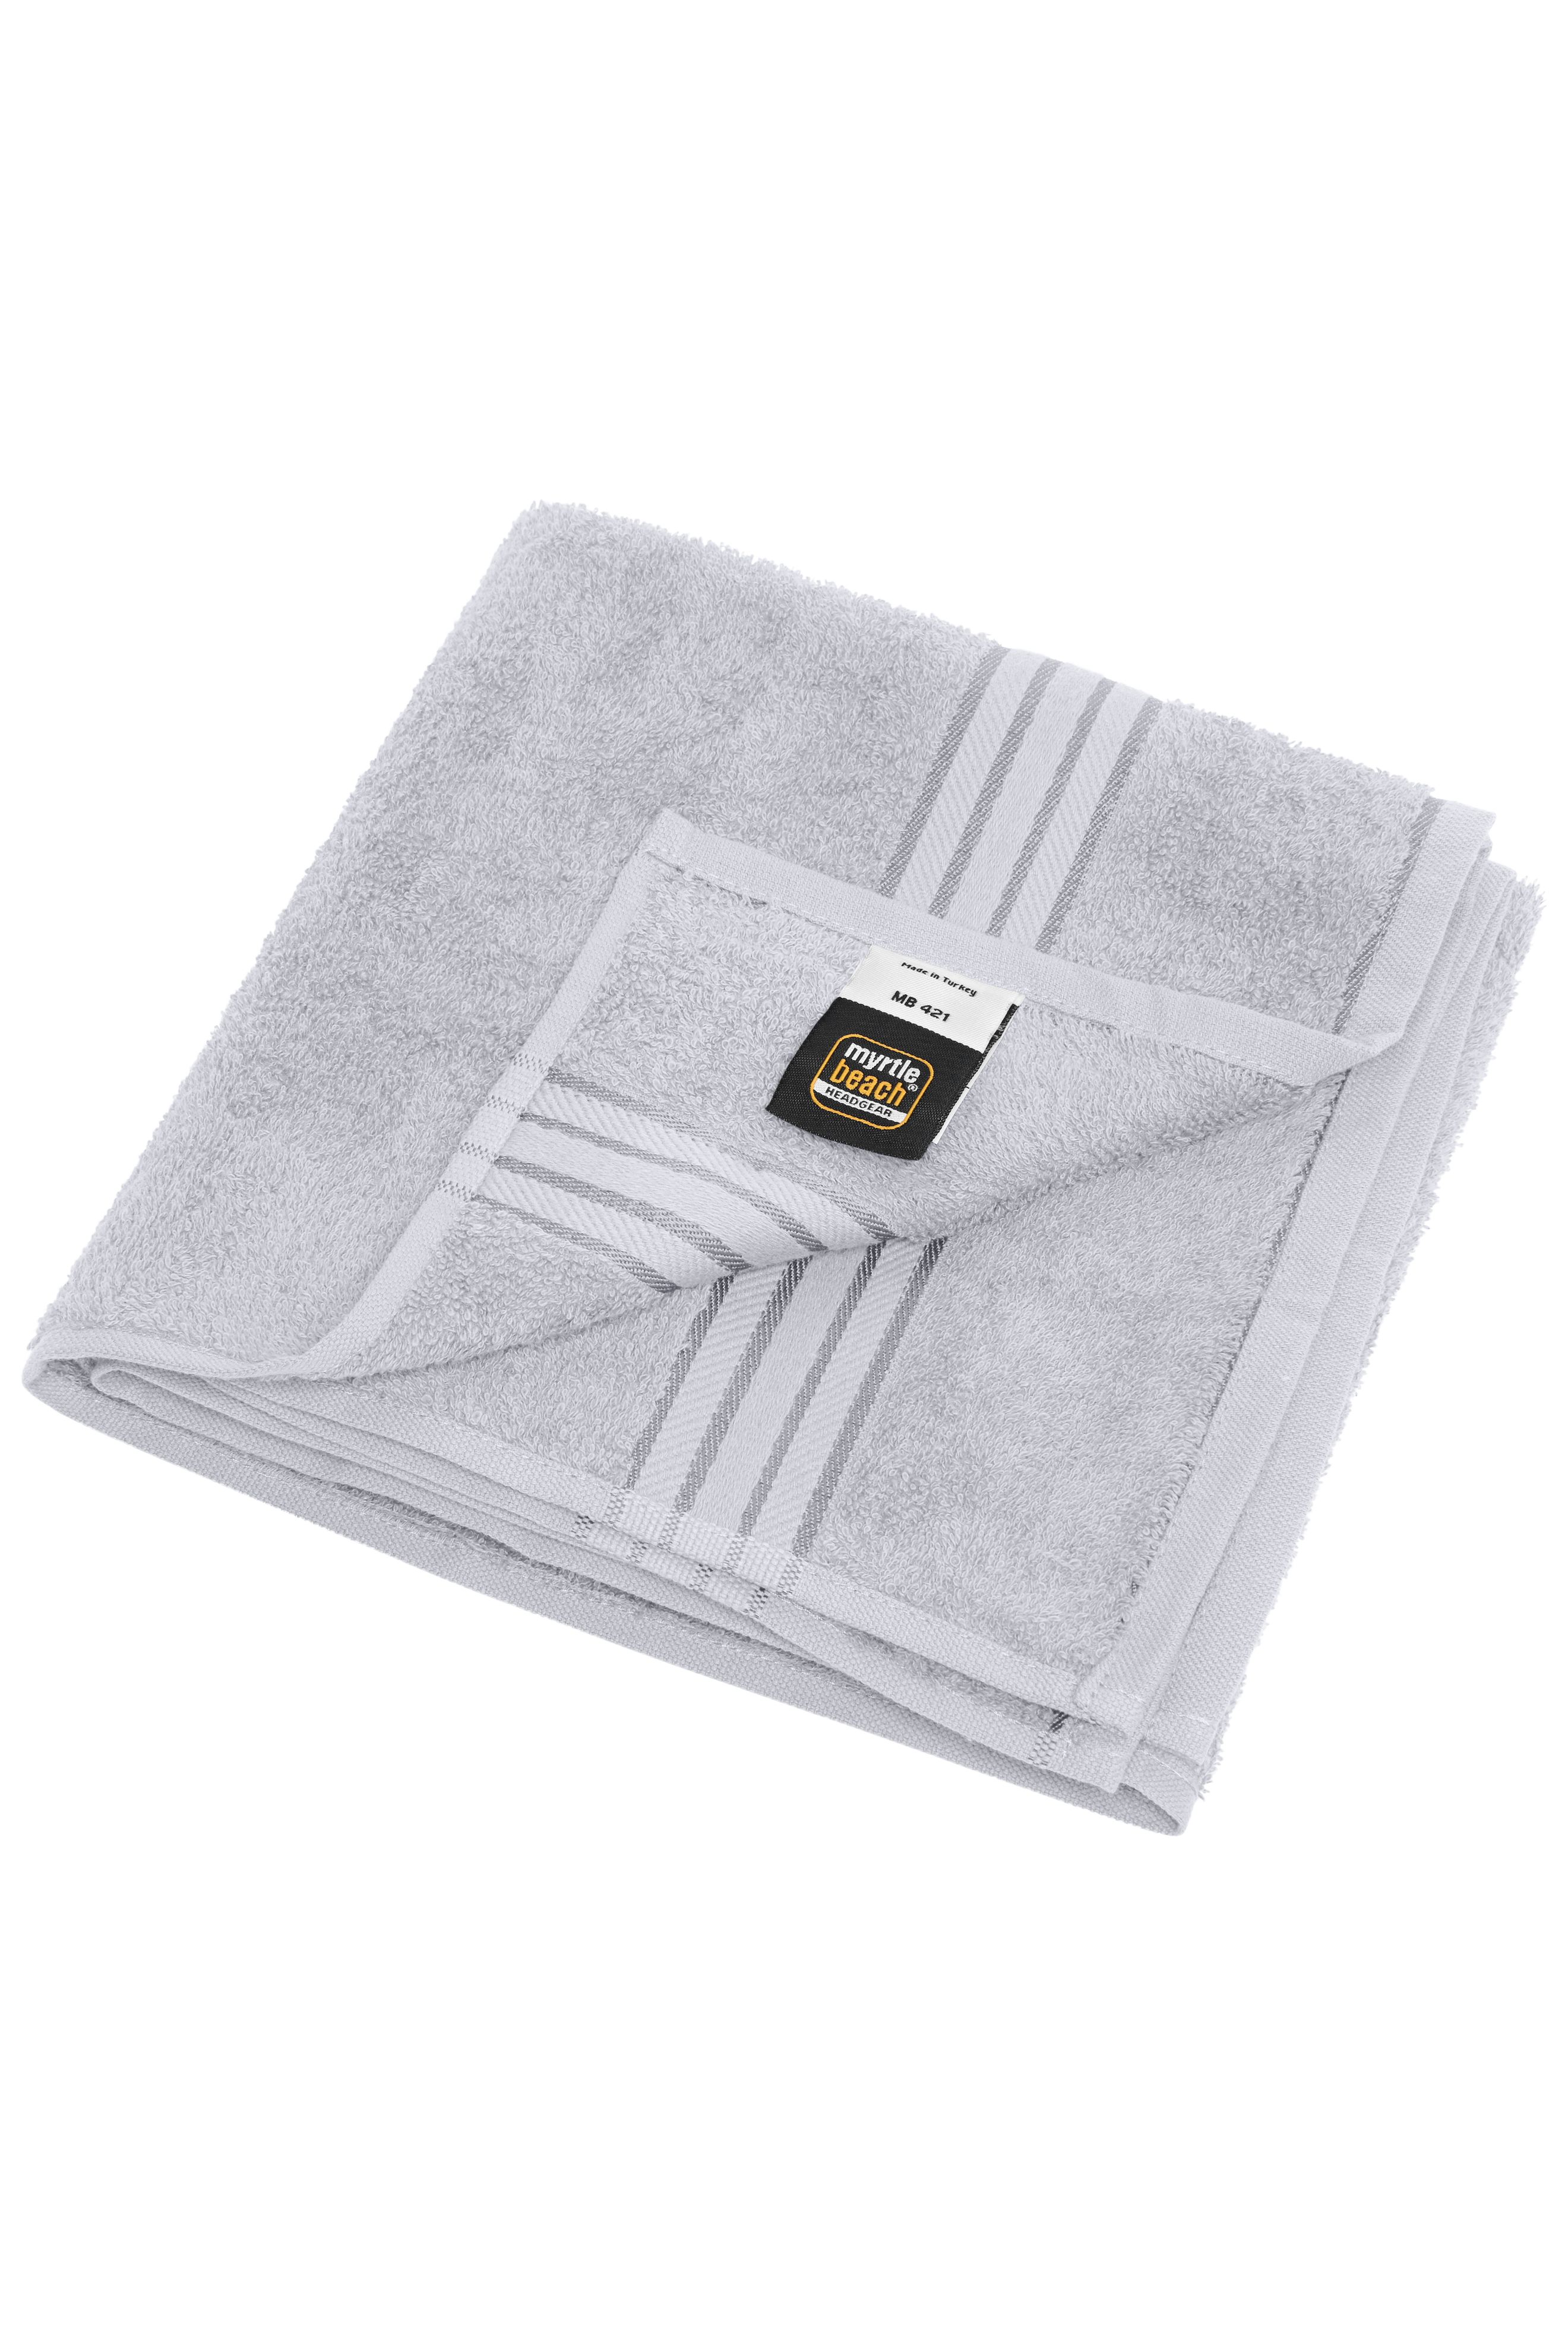 Hand Towel MB421 Handtuch in flauschiger Walkfrottier-Qualität